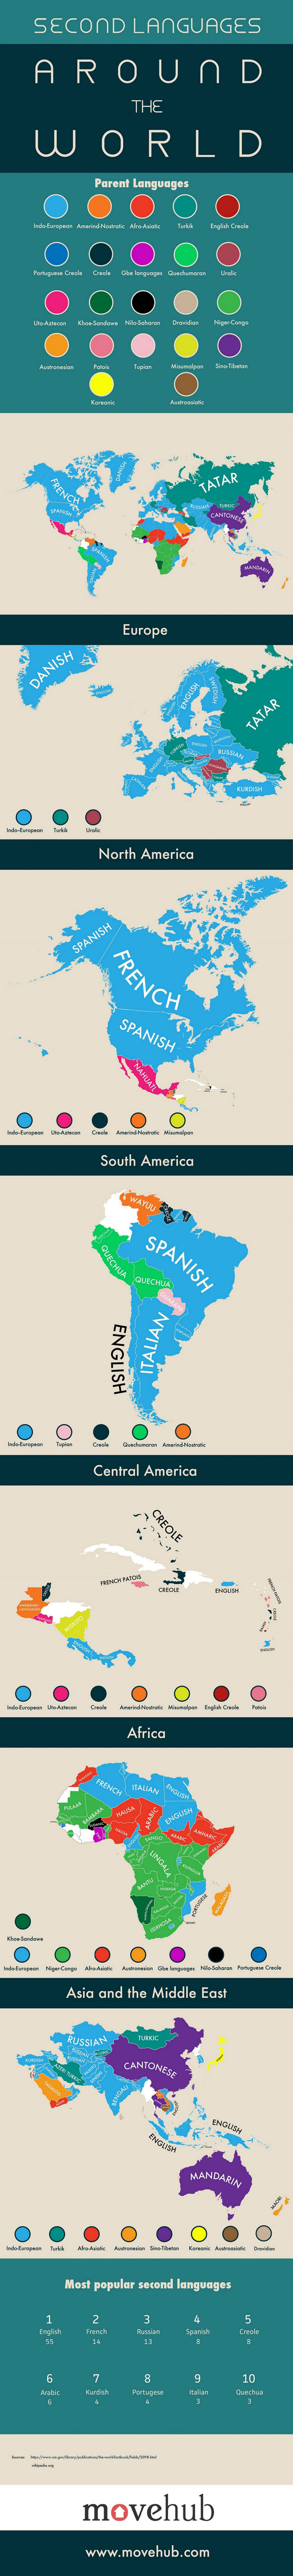 اینفوگرافی: زبان دوم کشورهای مختلف جهان